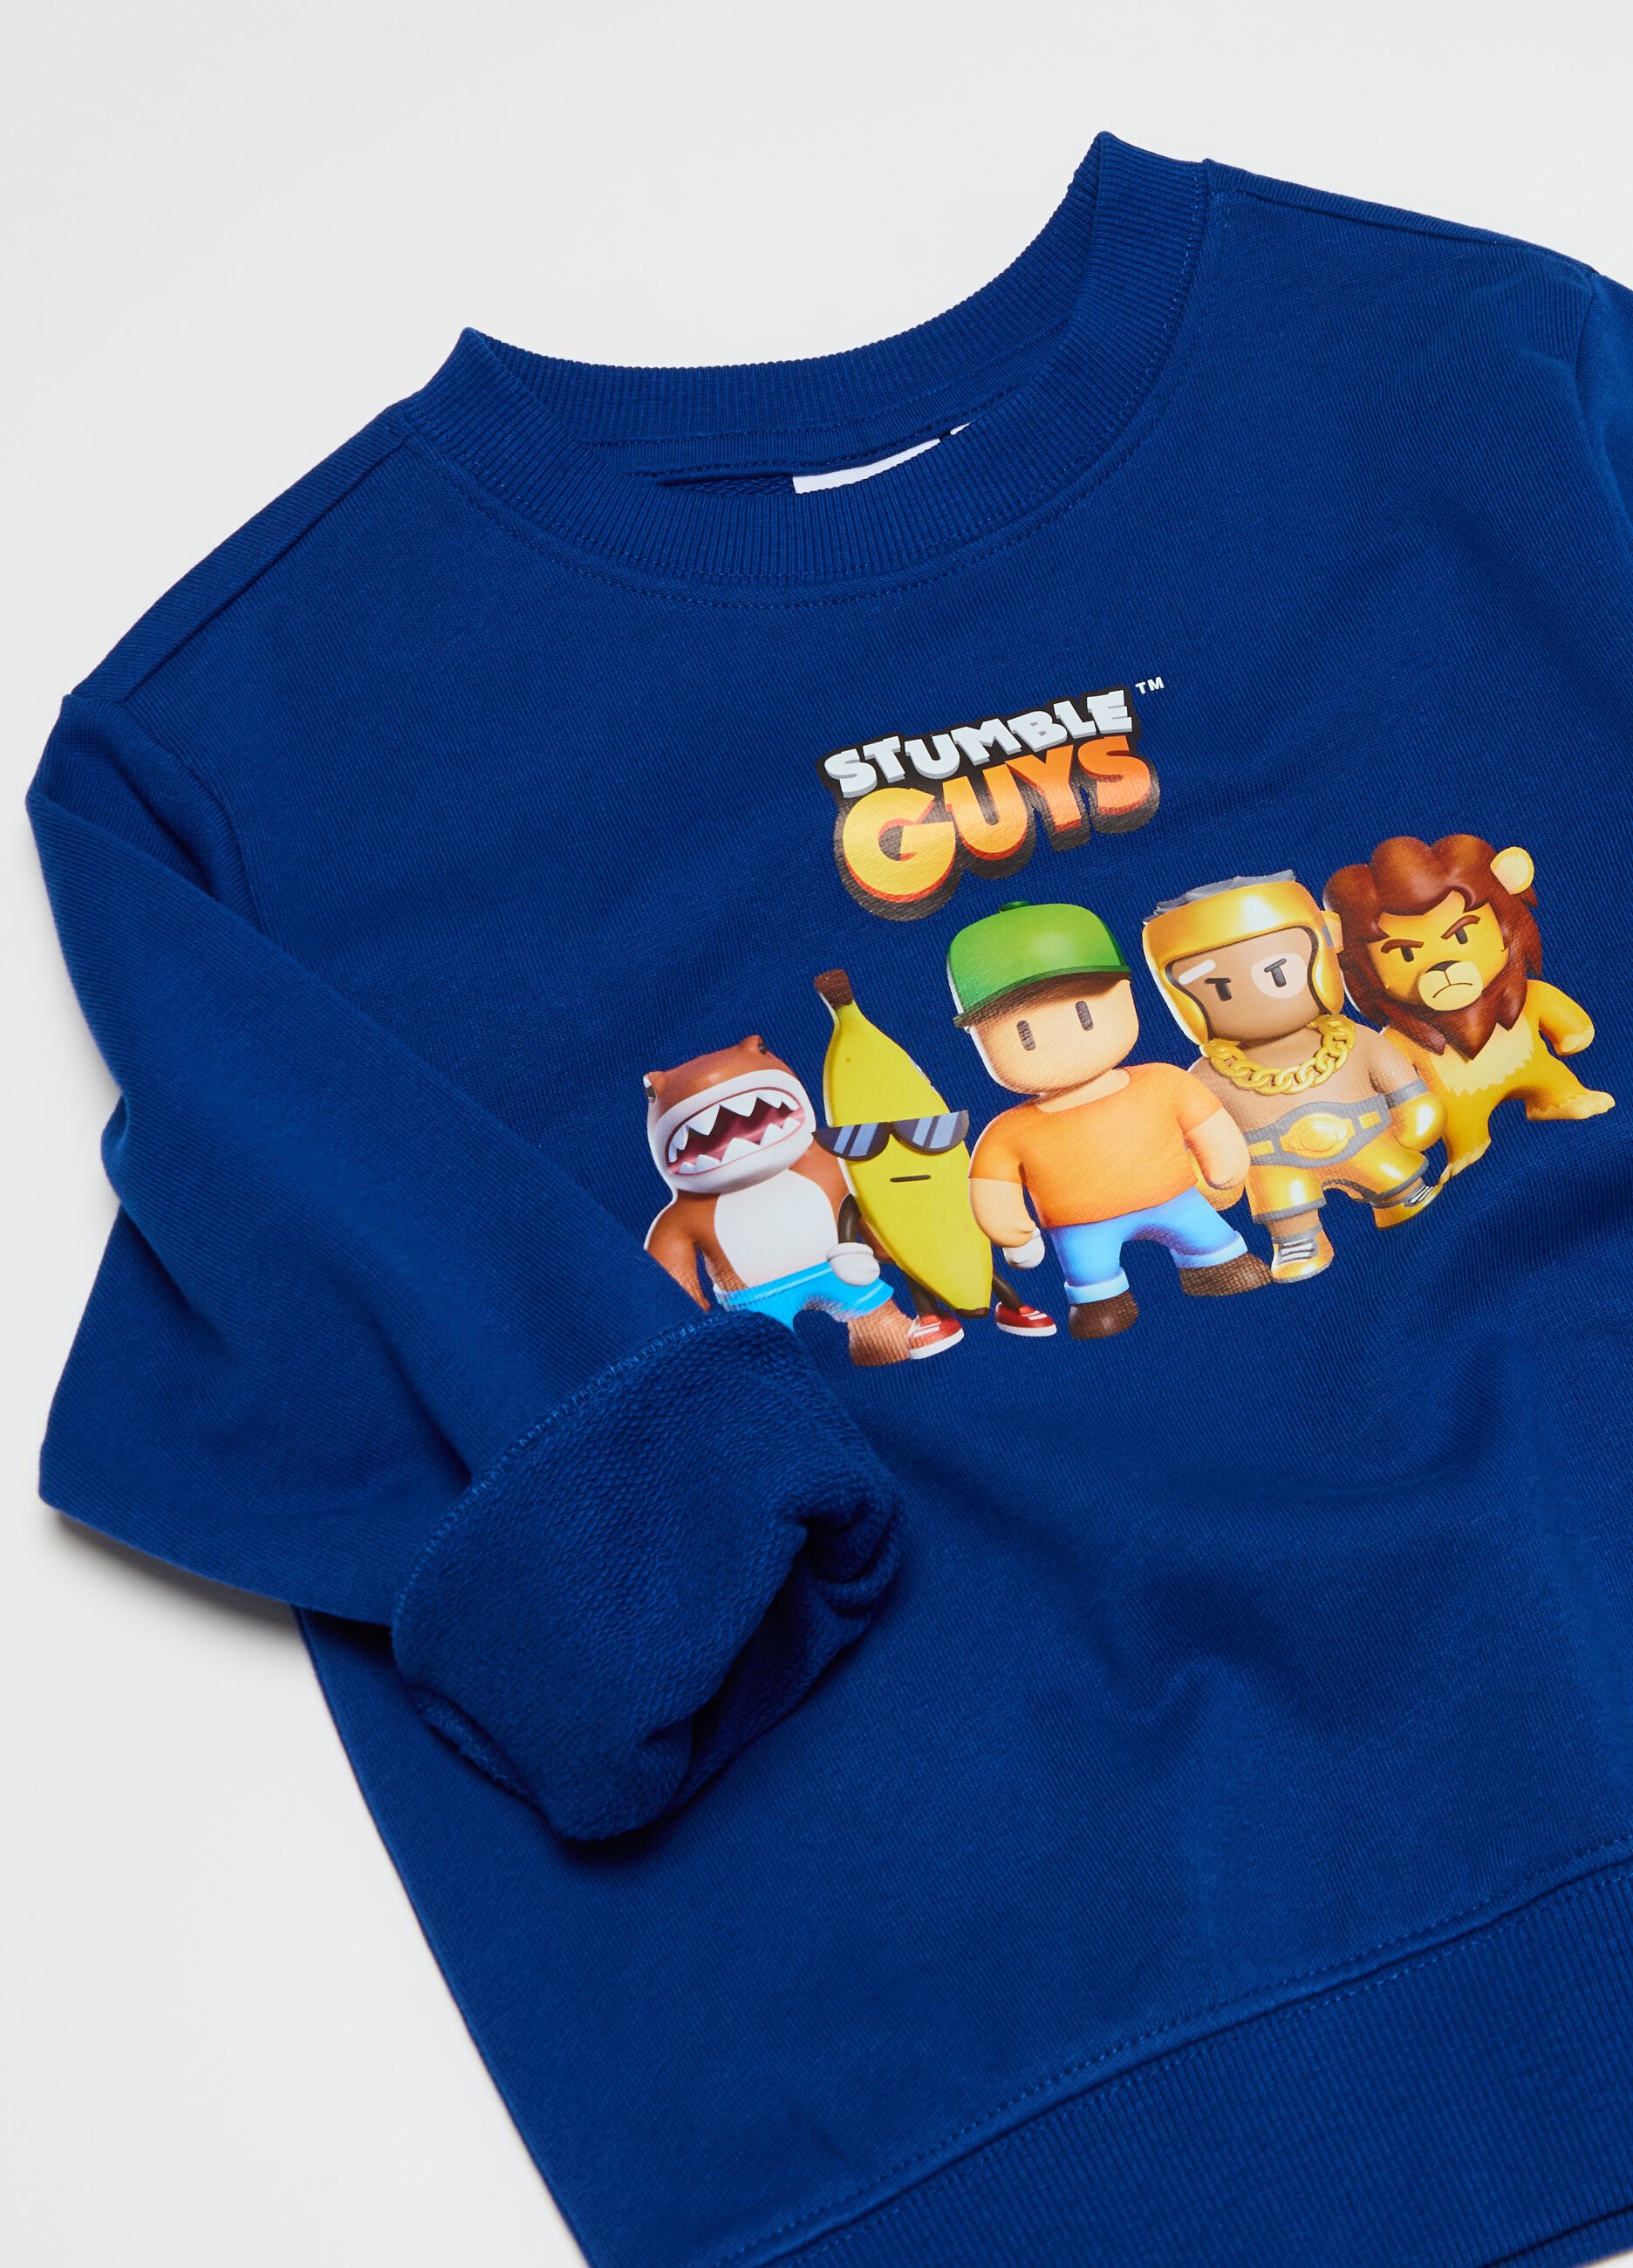 Sweatshirt with Stumble Guys characters print